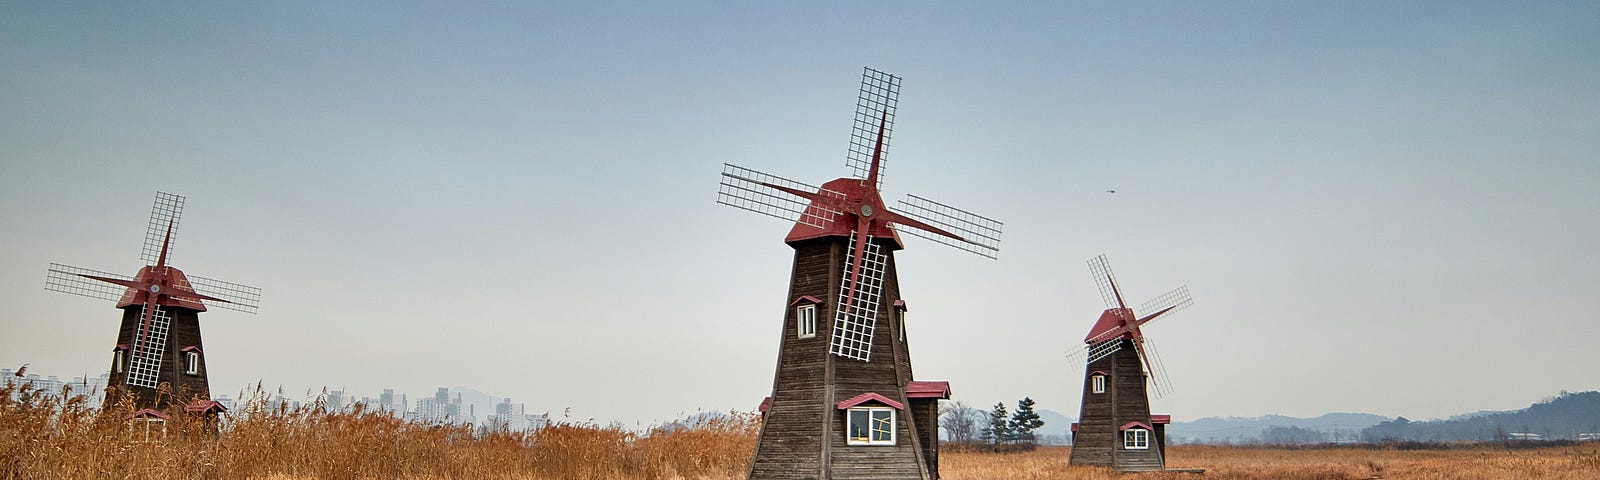 Three windmills in a field.